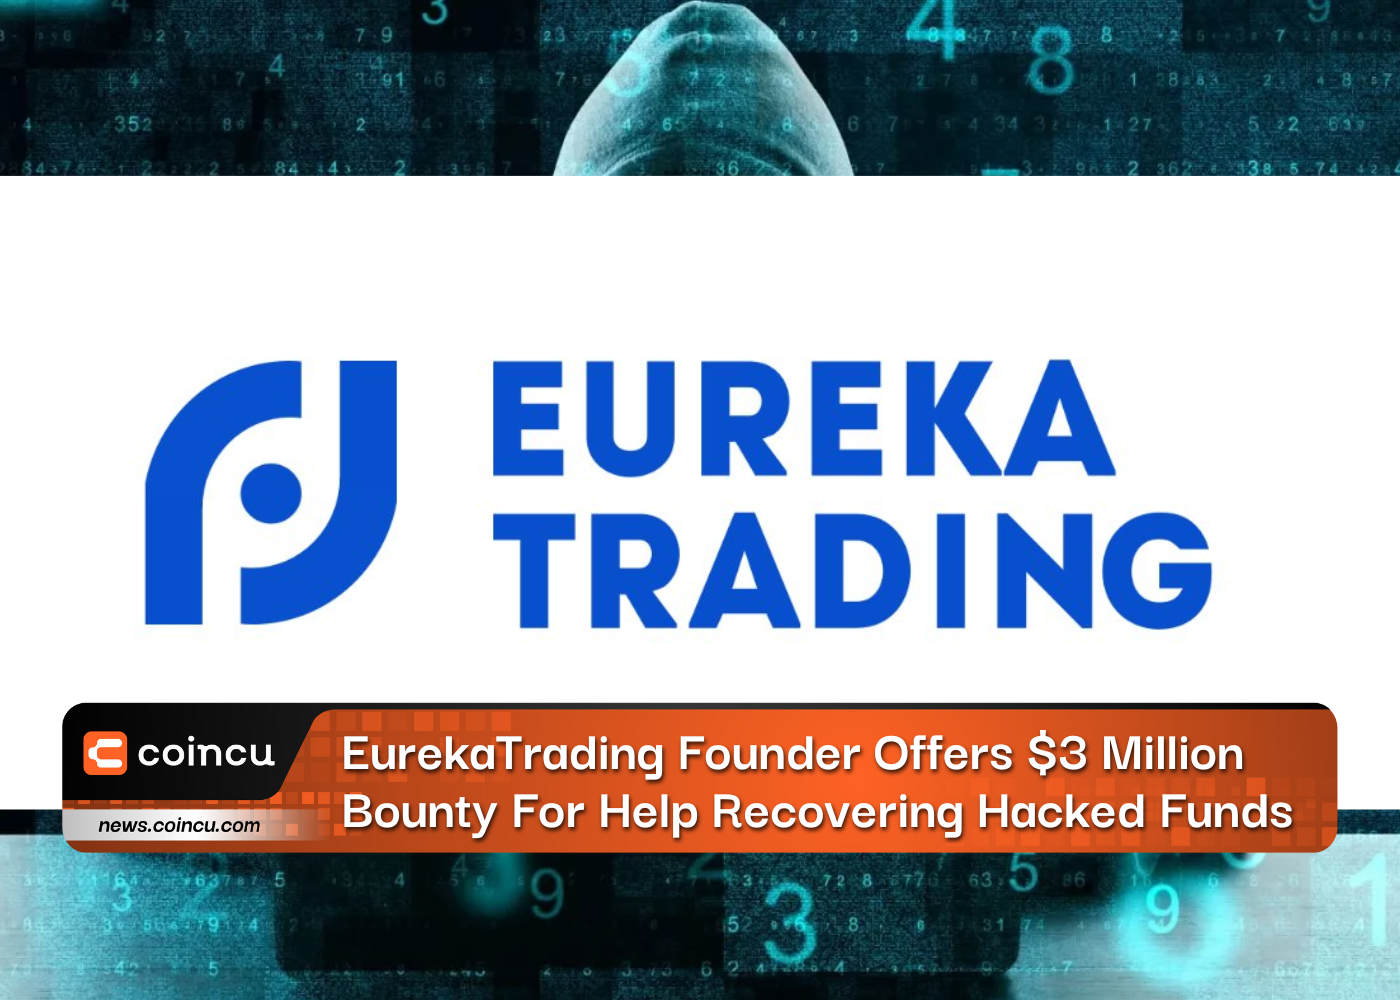 El fundador de EurekaTrading ofrece una recompensa de 3 millones de dólares por ayuda para recuperar fondos pirateados